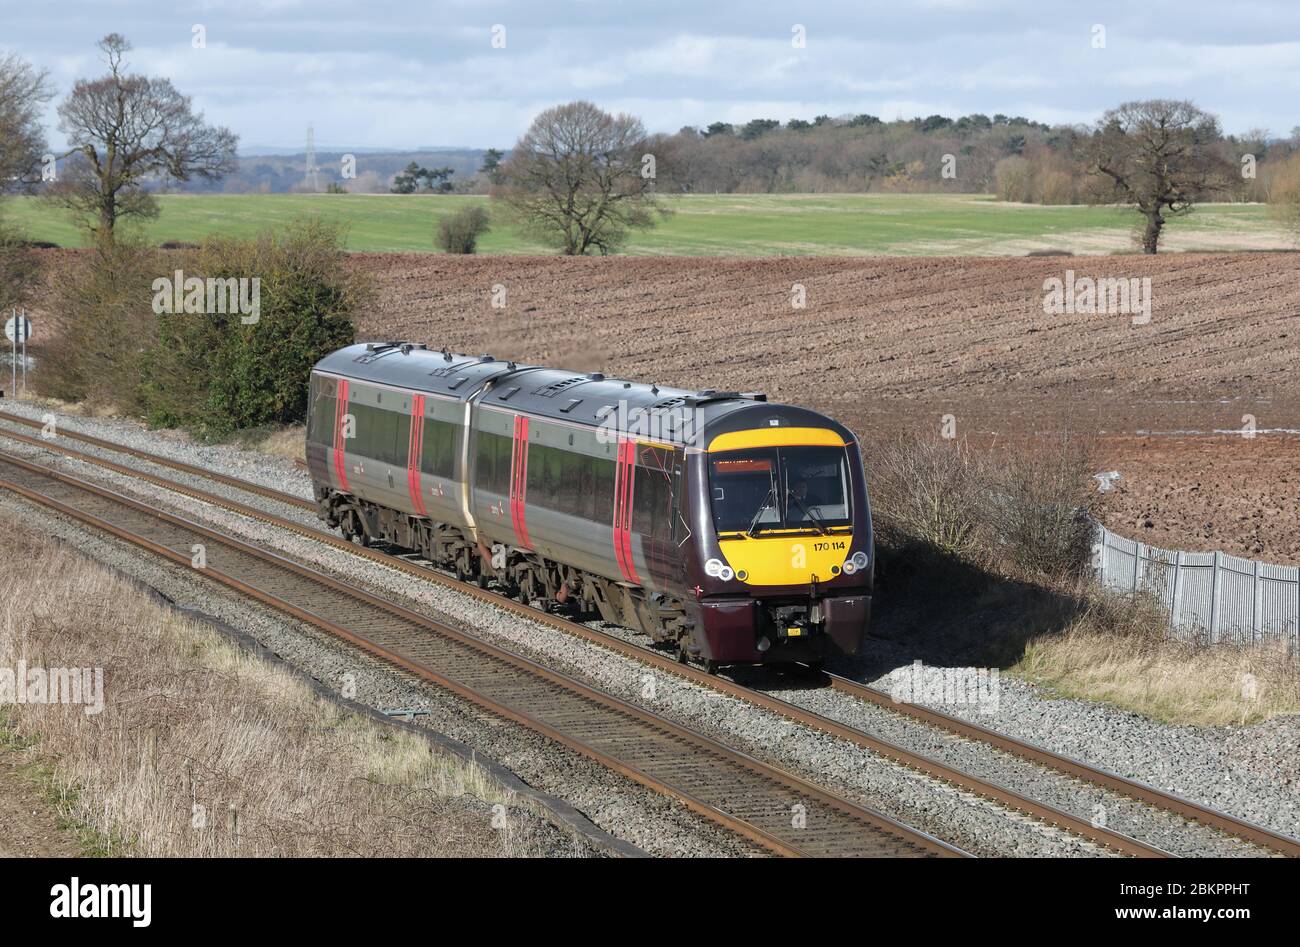 Un train de voyageurs diesel de classe 170 qui traverse la campagne du Staffordshire au Royaume-Uni. Banque D'Images